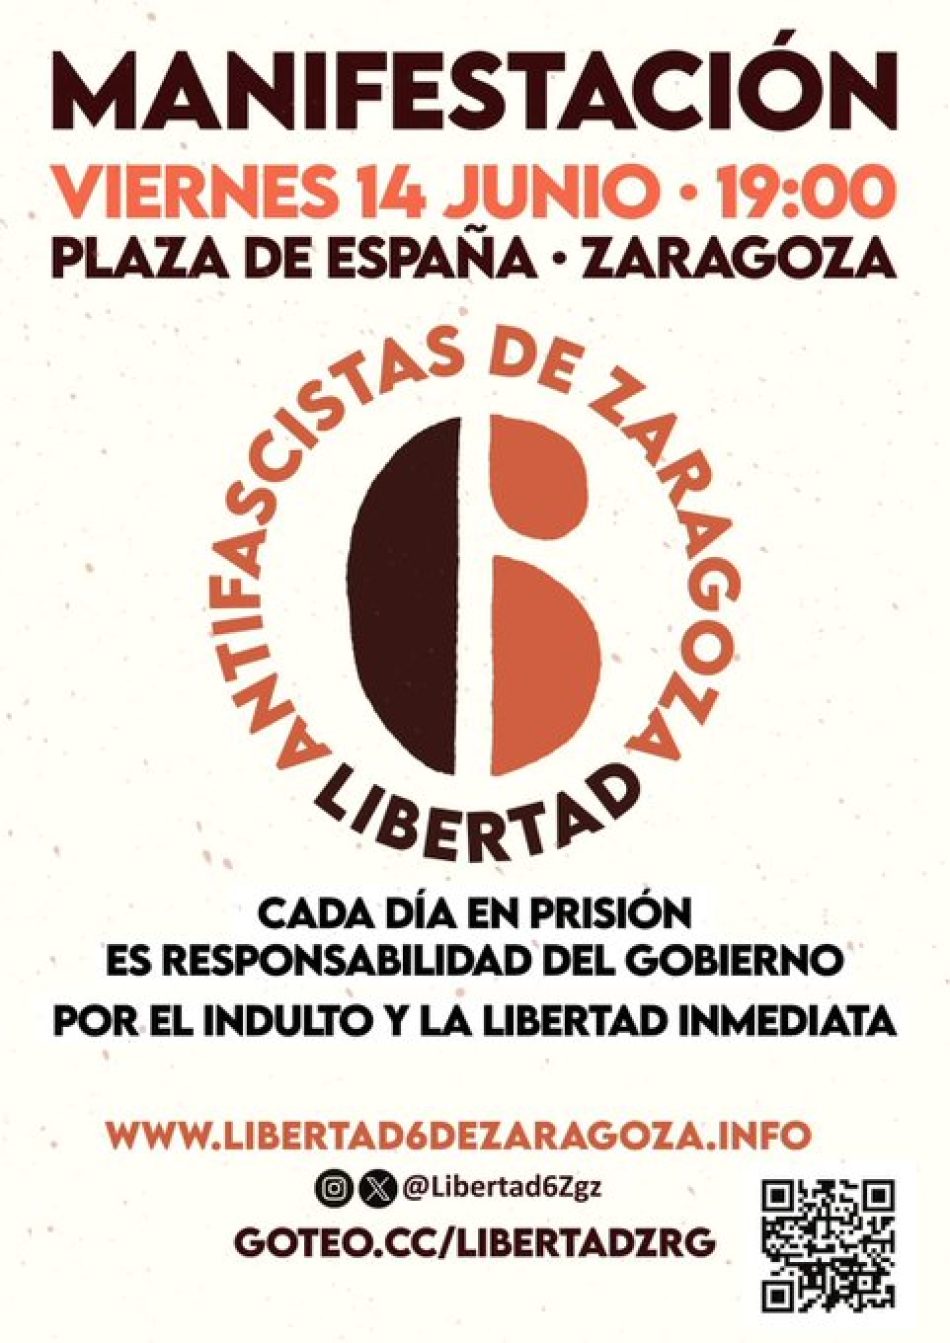 Convocada manifestación hoy viernes 14 de junio por la libertad de los antifascistas de Zaragoza